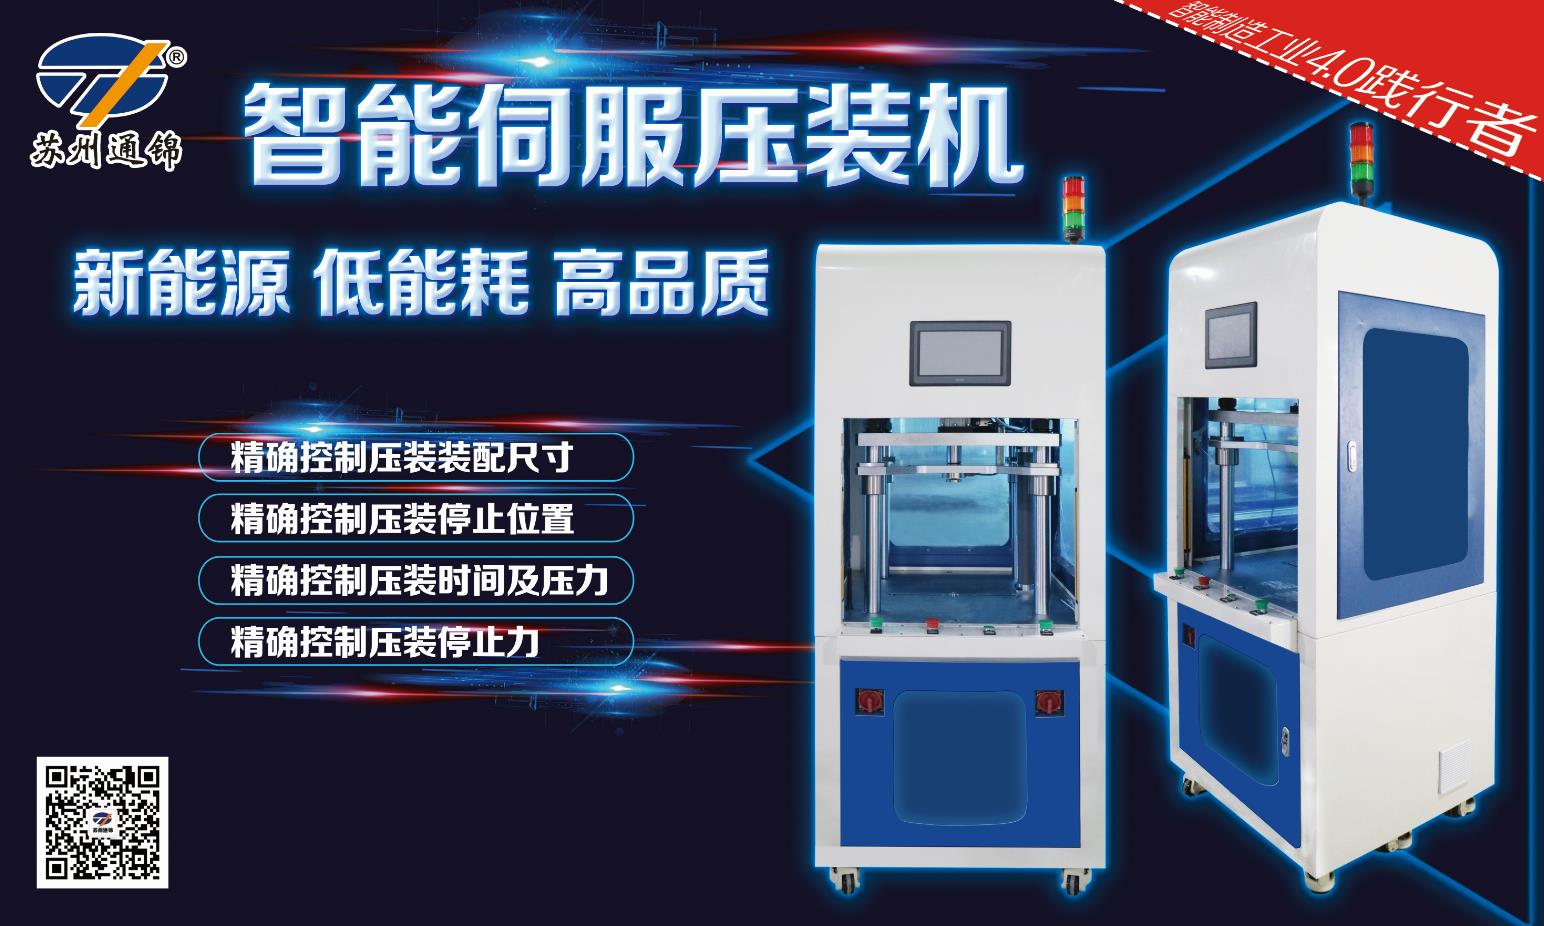 【展會專欄】2019中國工博會機器人展，我們蓄勢待發！